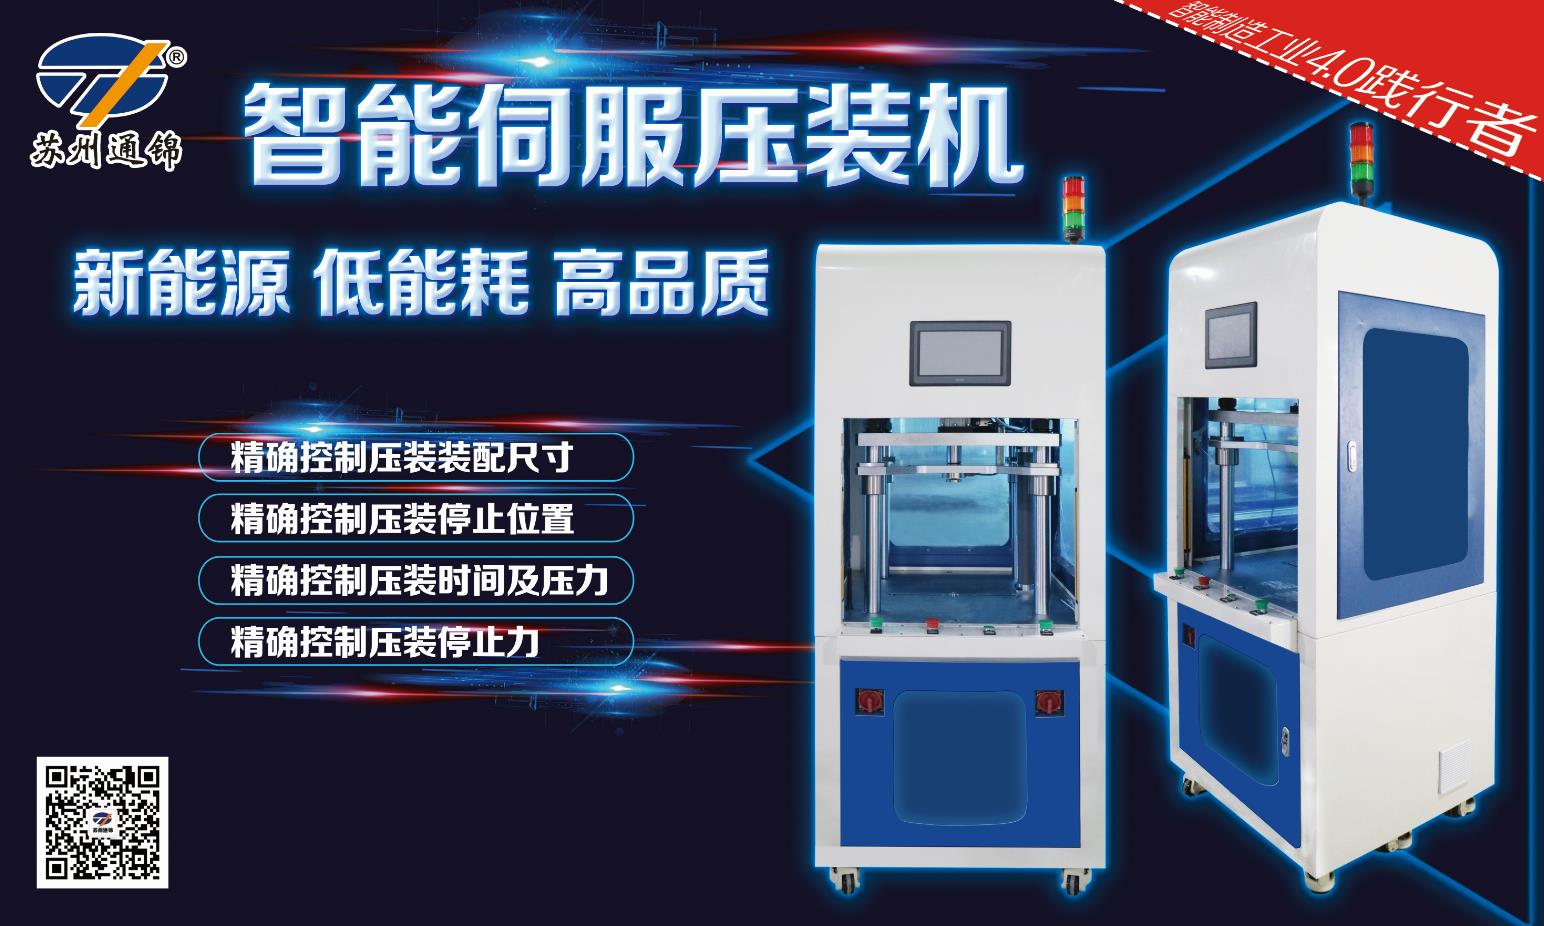 【展會專欄】2019中國工博會機器人展，我們蓄勢待發！